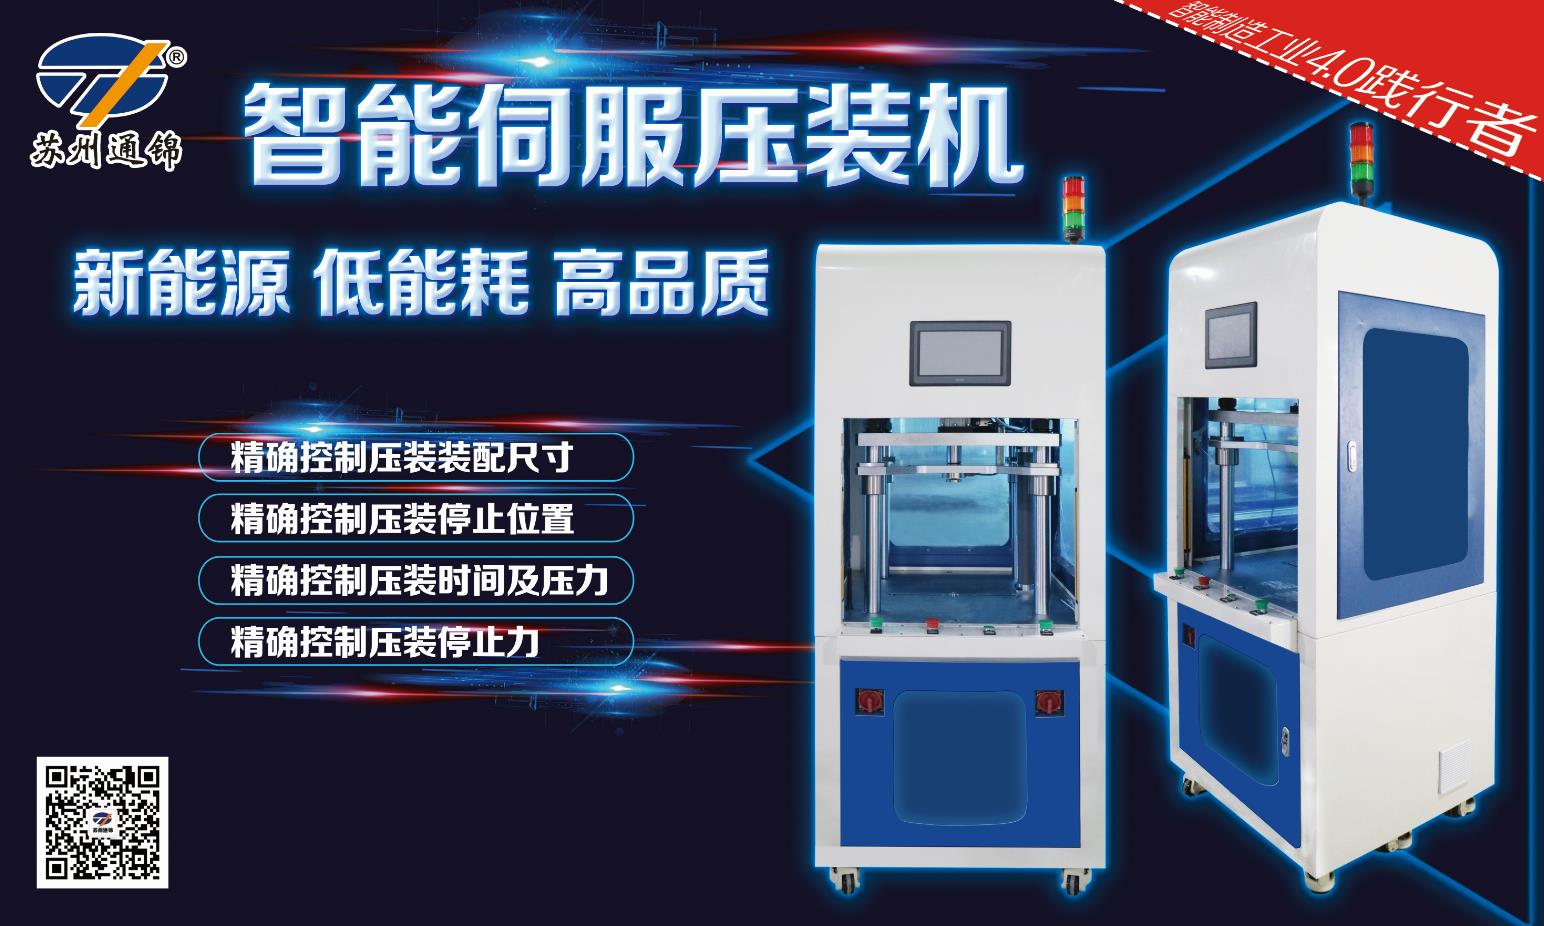 【展會專欄】2019中國工博會機器人展，我們蓄勢待發！